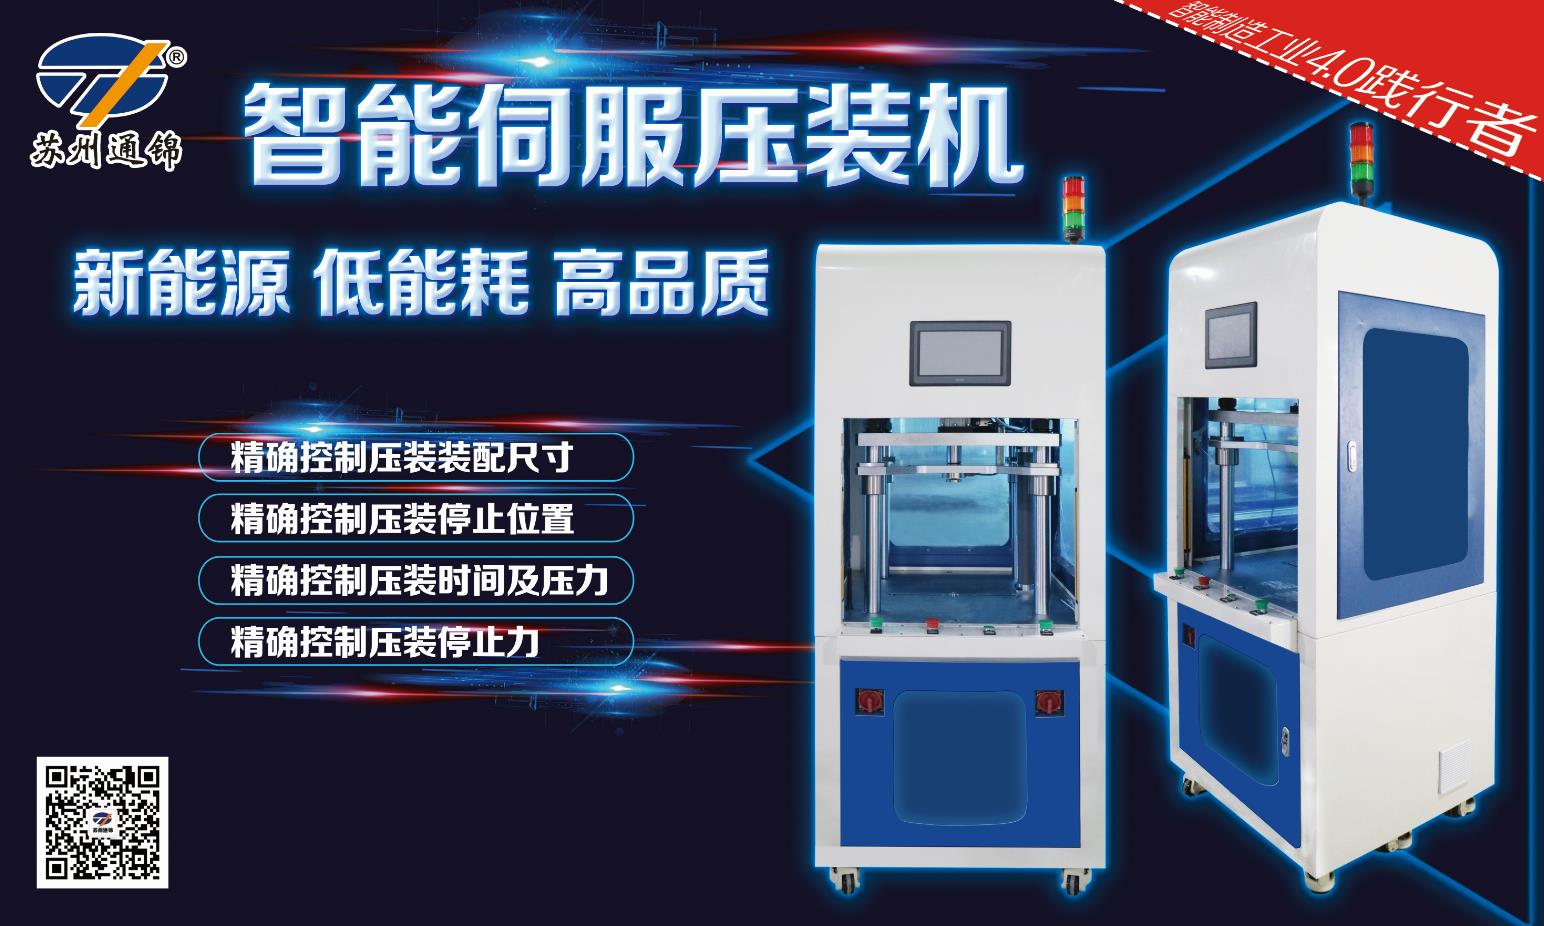 【展會專欄】2019中國工博會機器人展，我們蓄勢待發！